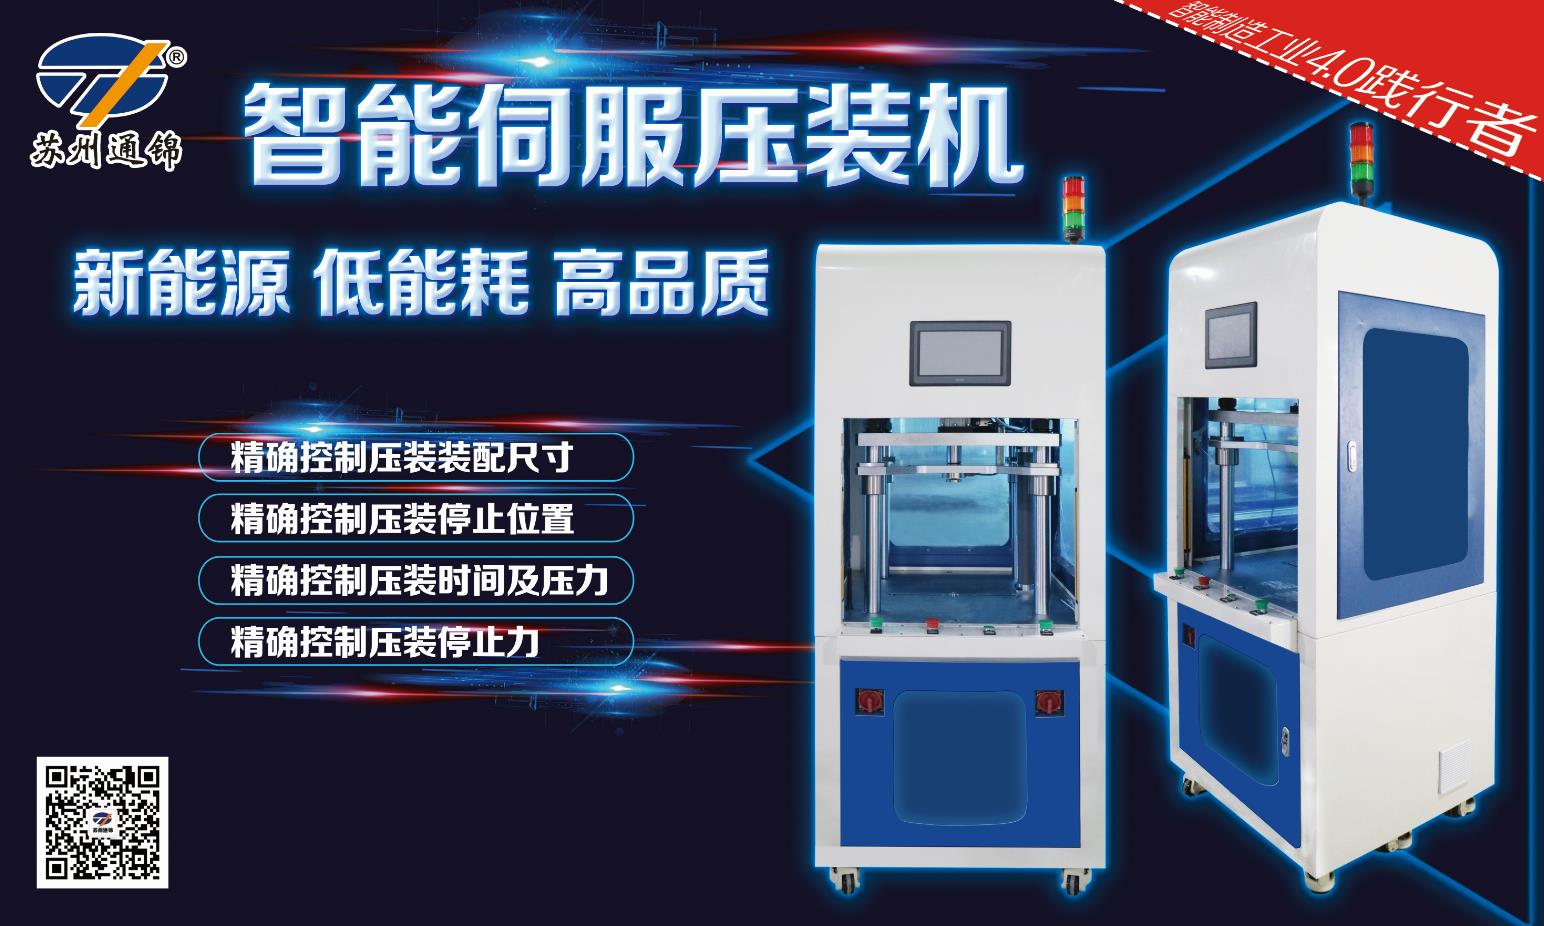 【展會專欄】2019中國工博會機器人展，我們蓄勢待發！